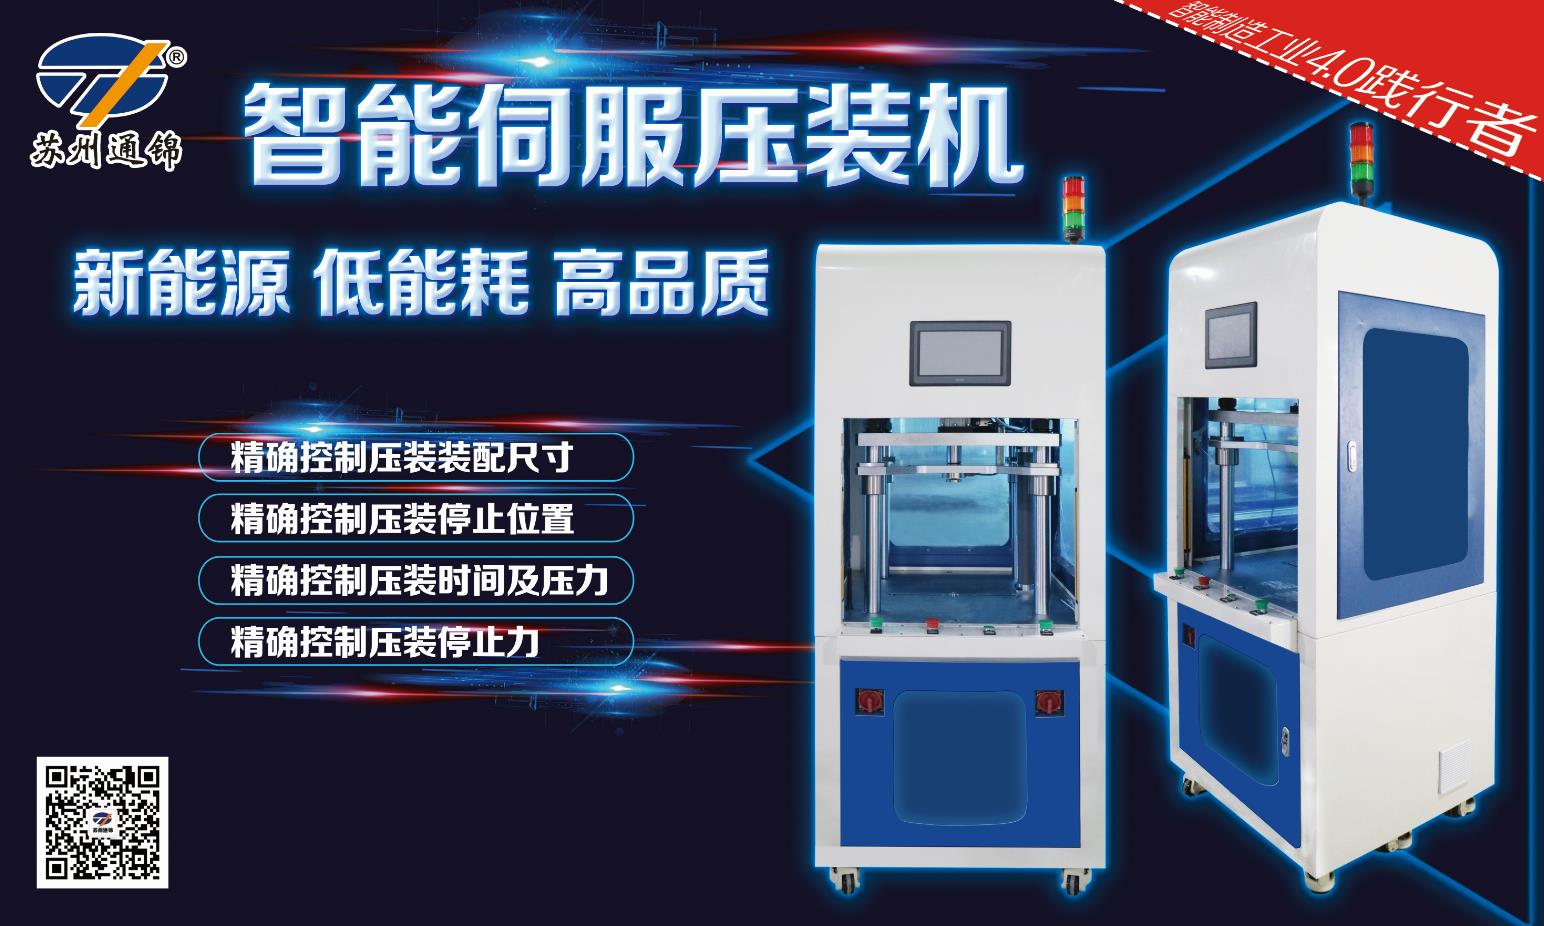 【展會專欄】2019中國工博會機器人展，我們蓄勢待發！